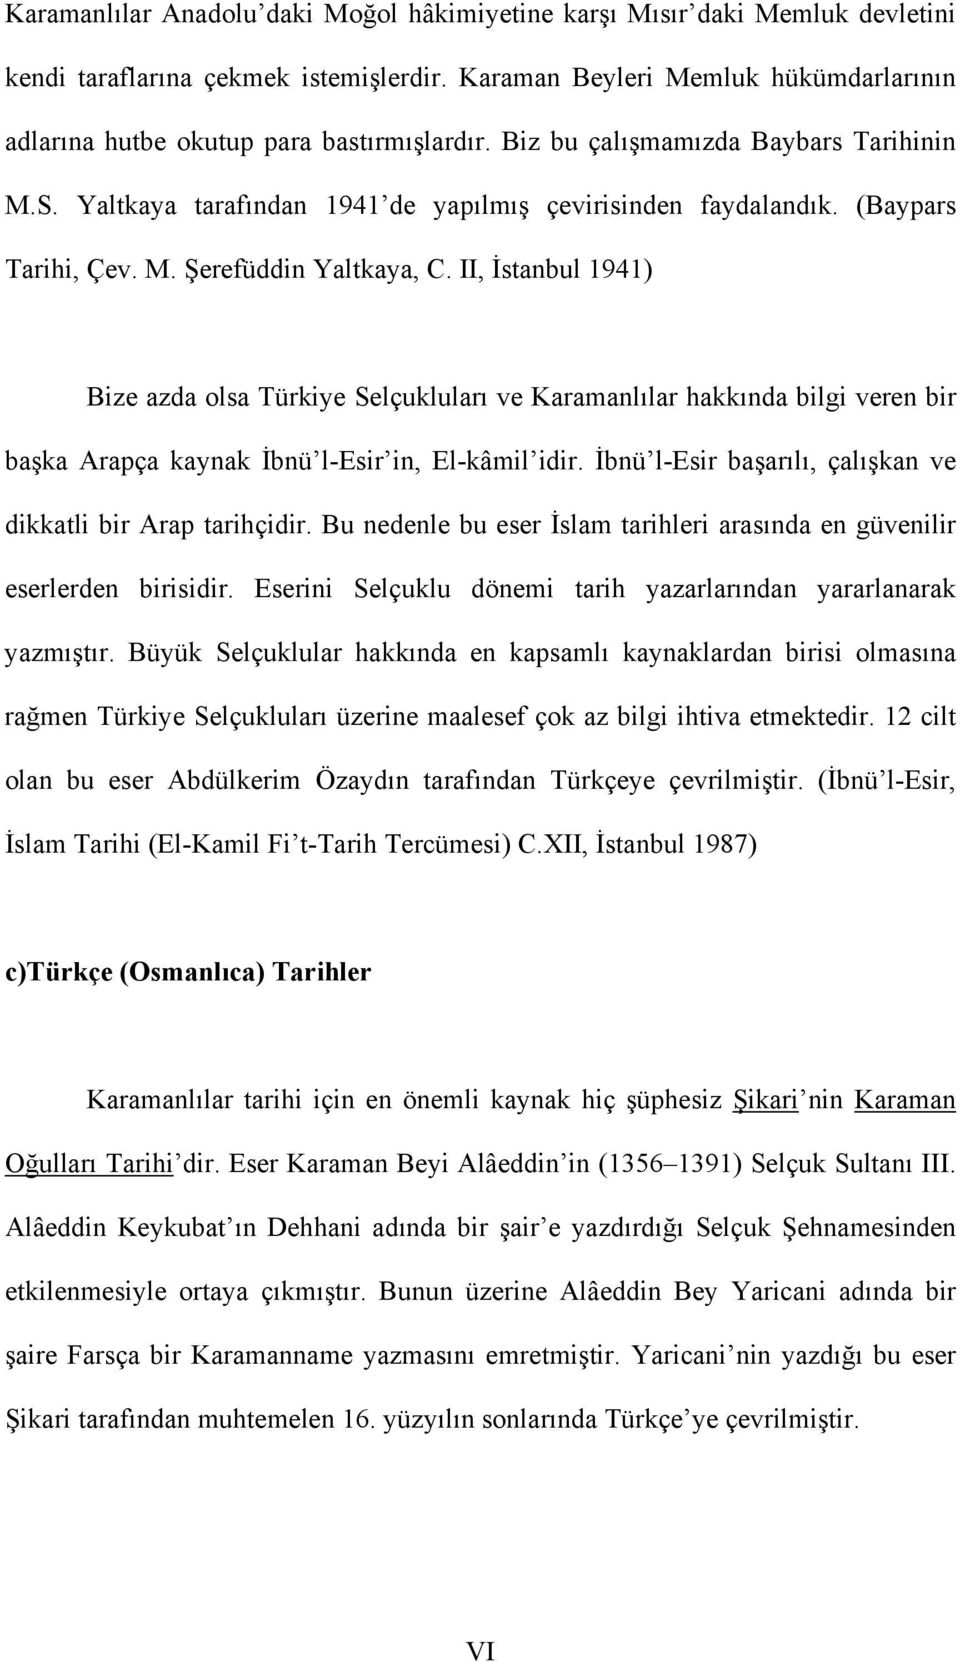 (Baypars Tarihi, Çev. M. Şerefüddin Yaltkaya, C. II, İstanbul 1941) Bize azda olsa Türkiye Selçukluları ve Karamanlılar hakkında bilgi veren bir başka Arapça kaynak İbnü l-esir in, El-kâmil idir.